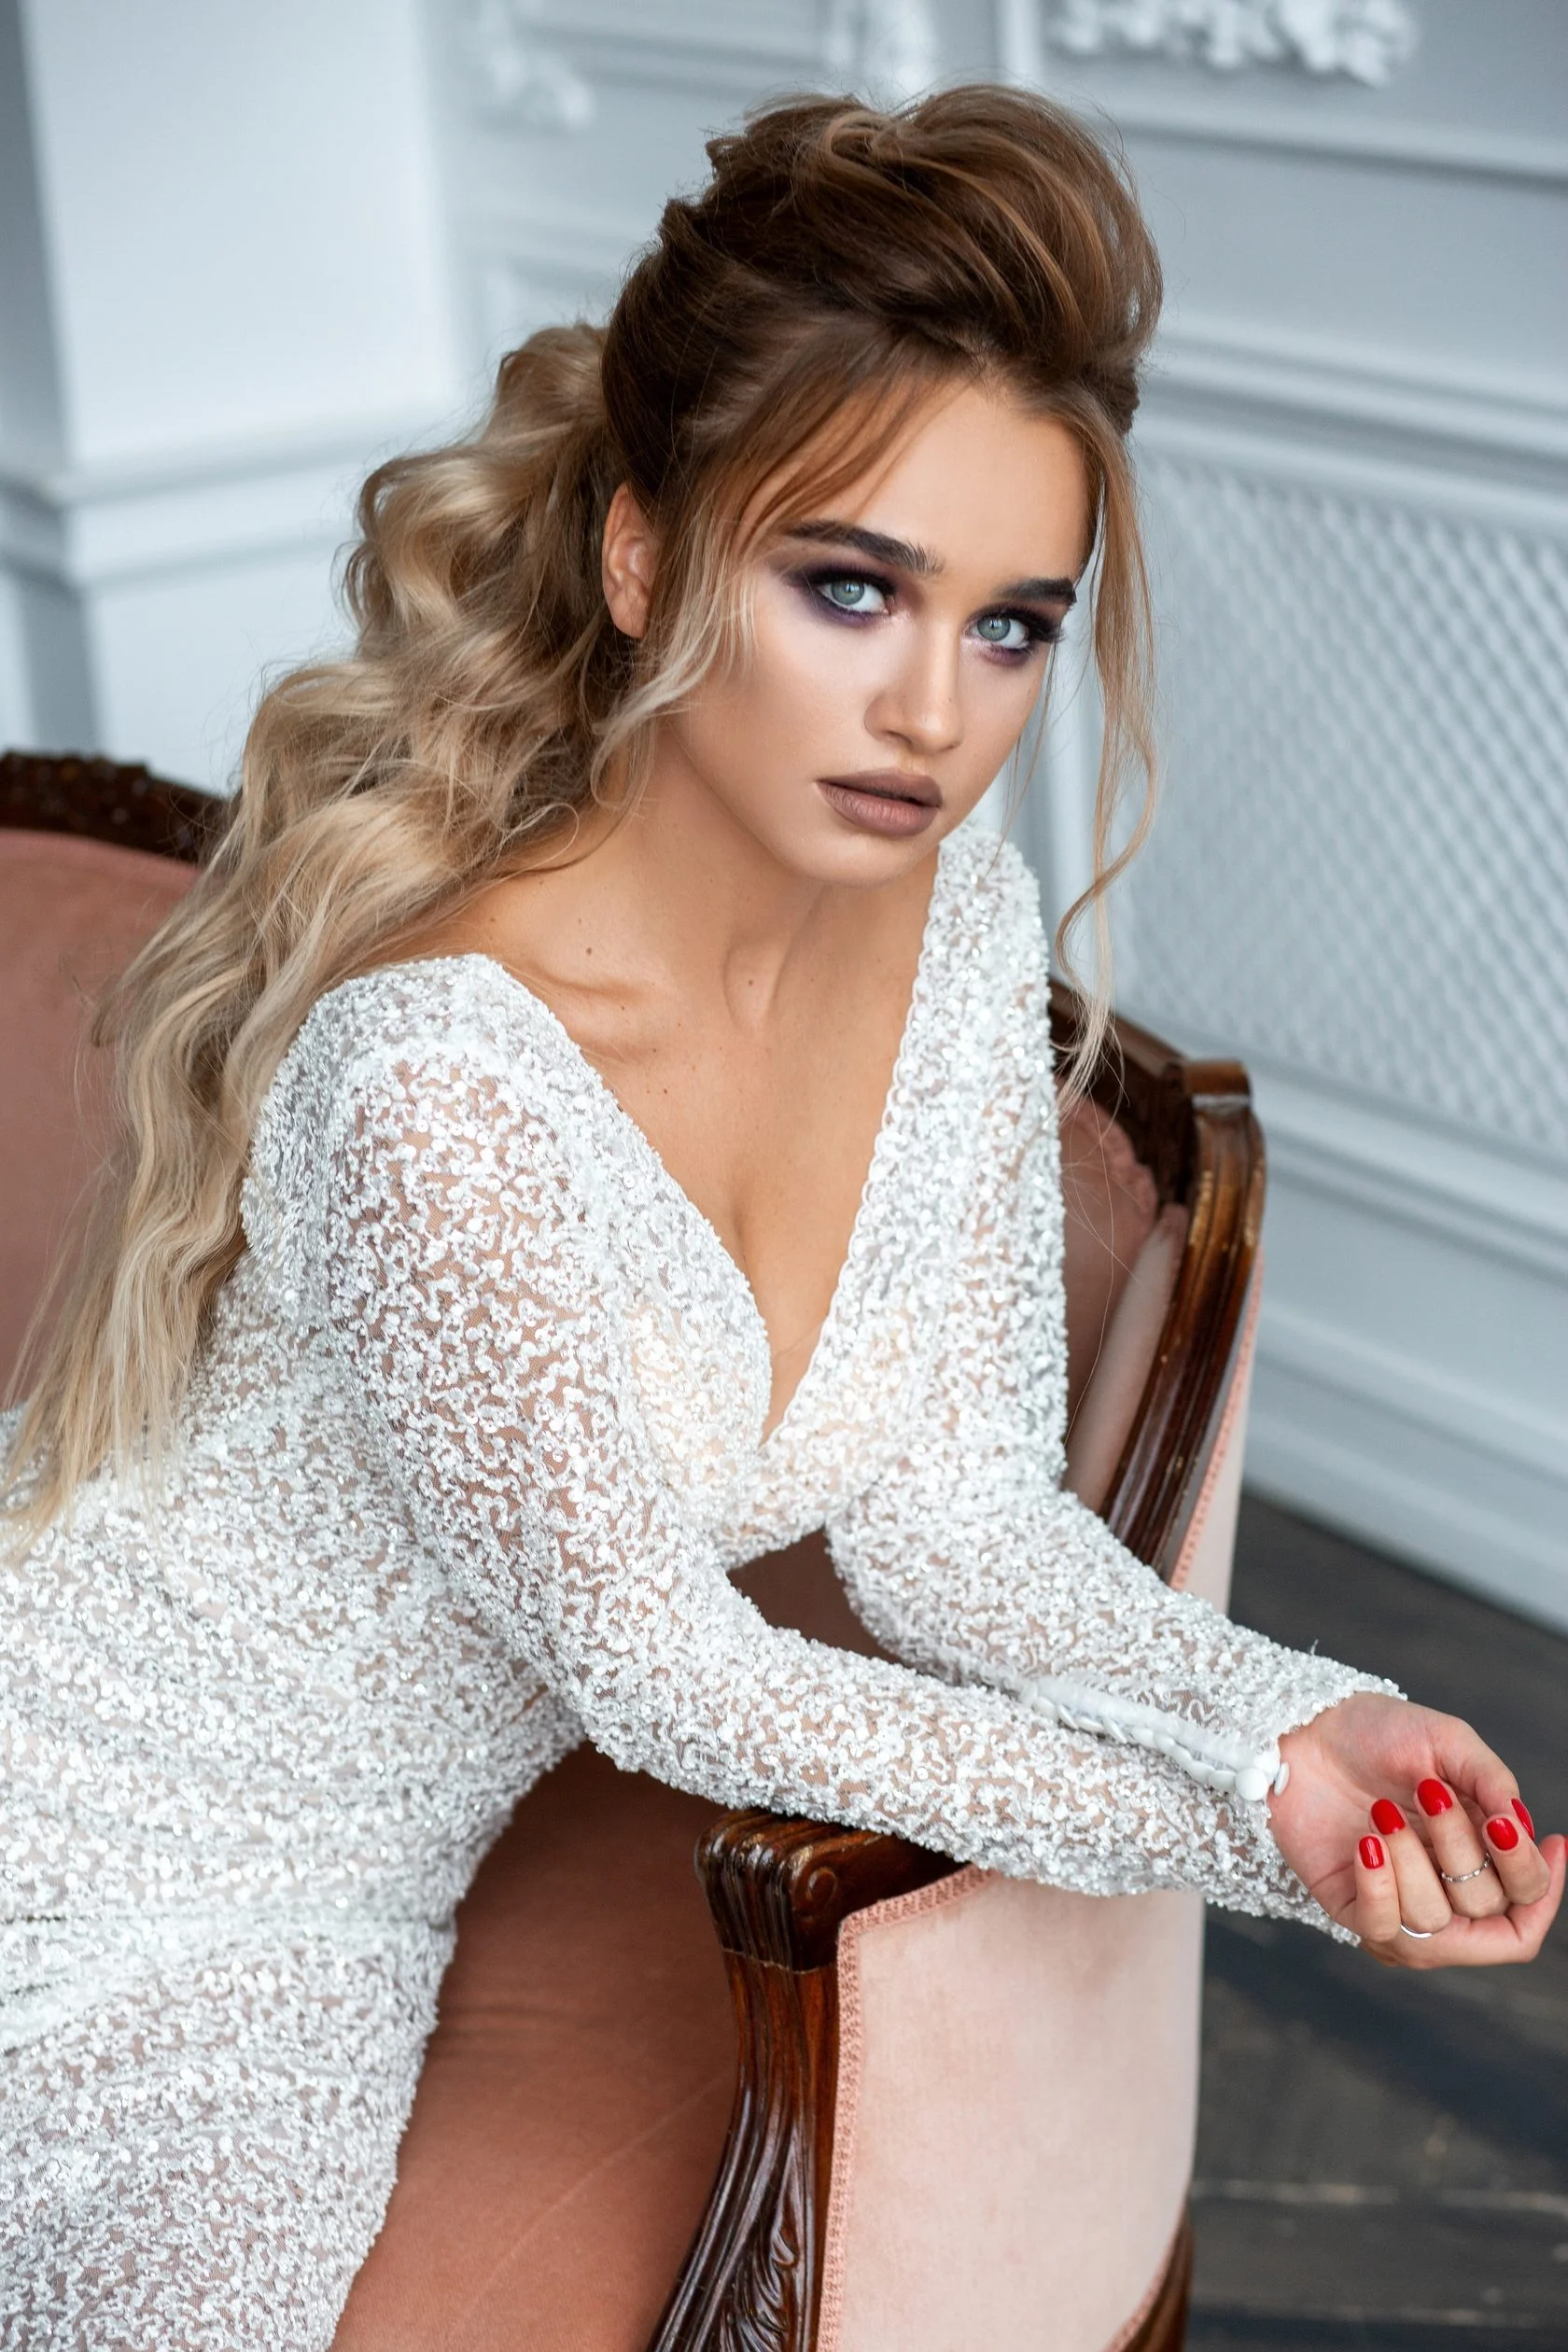 Весільні зачіски 2019: фото кращих варіантів укладок для нареченої - фото 438892